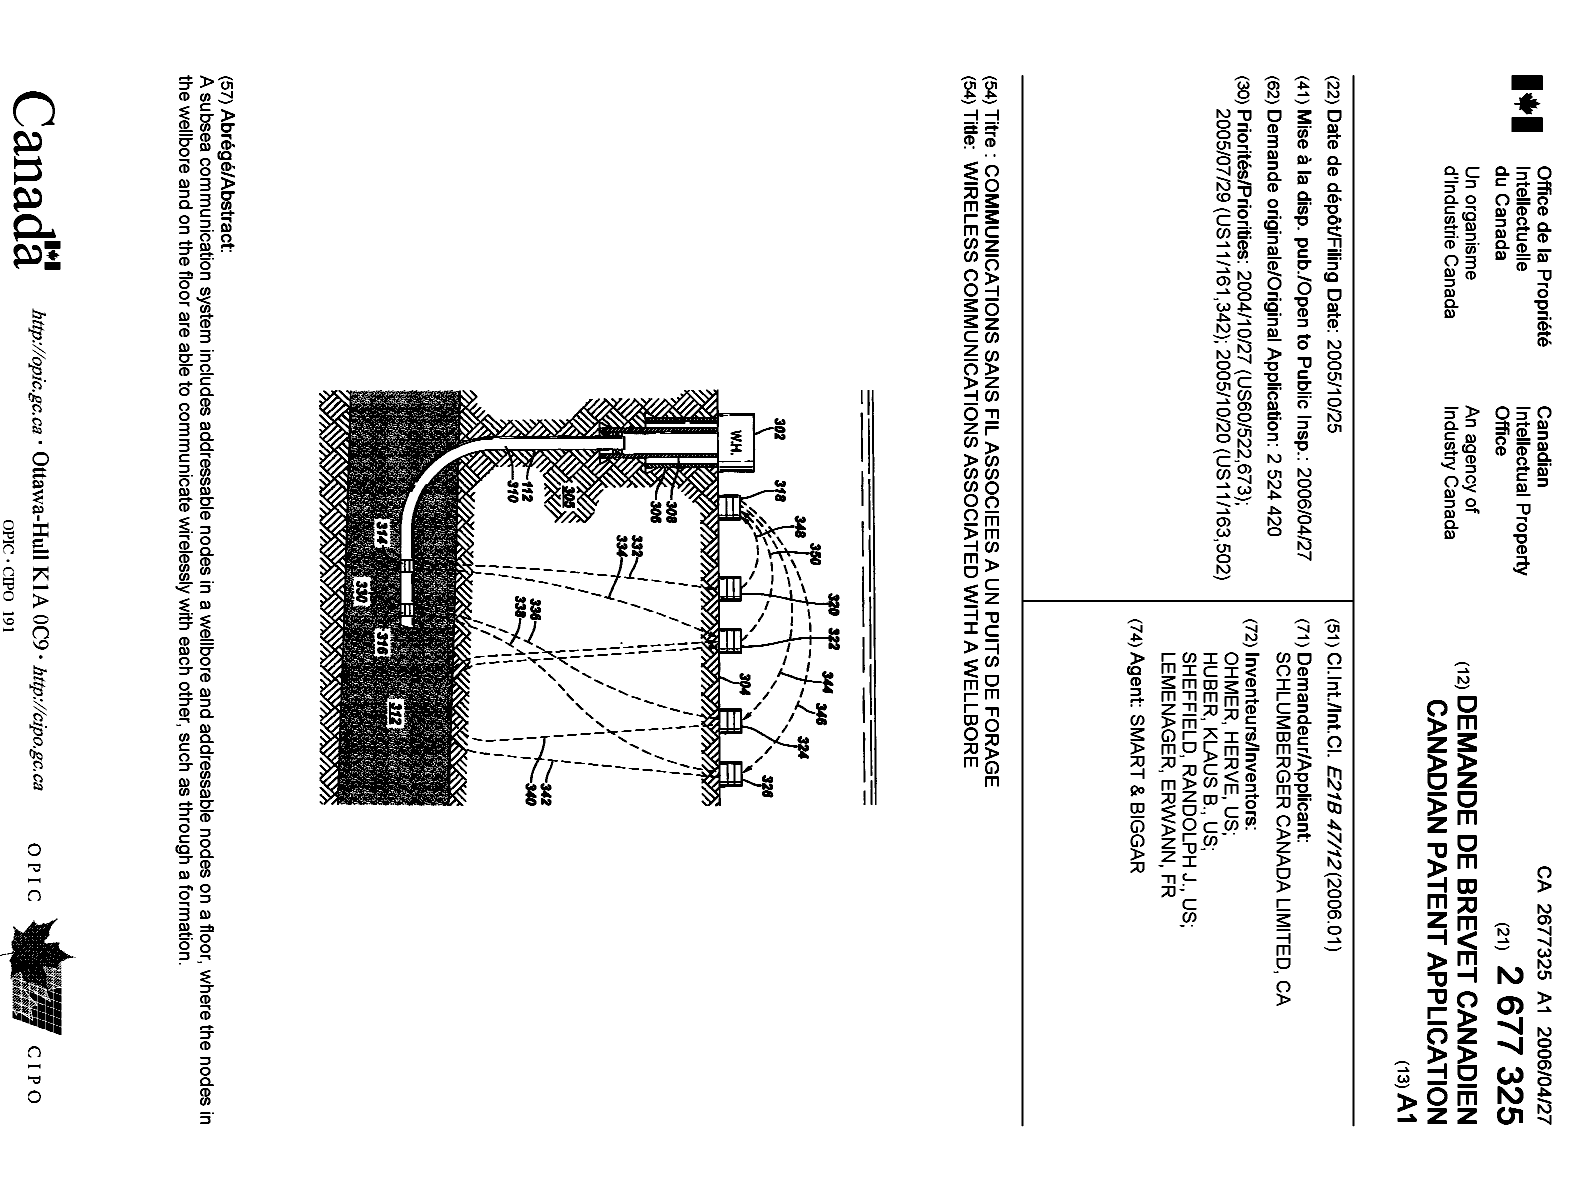 Document de brevet canadien 2677325. Page couverture 20091102. Image 1 de 1